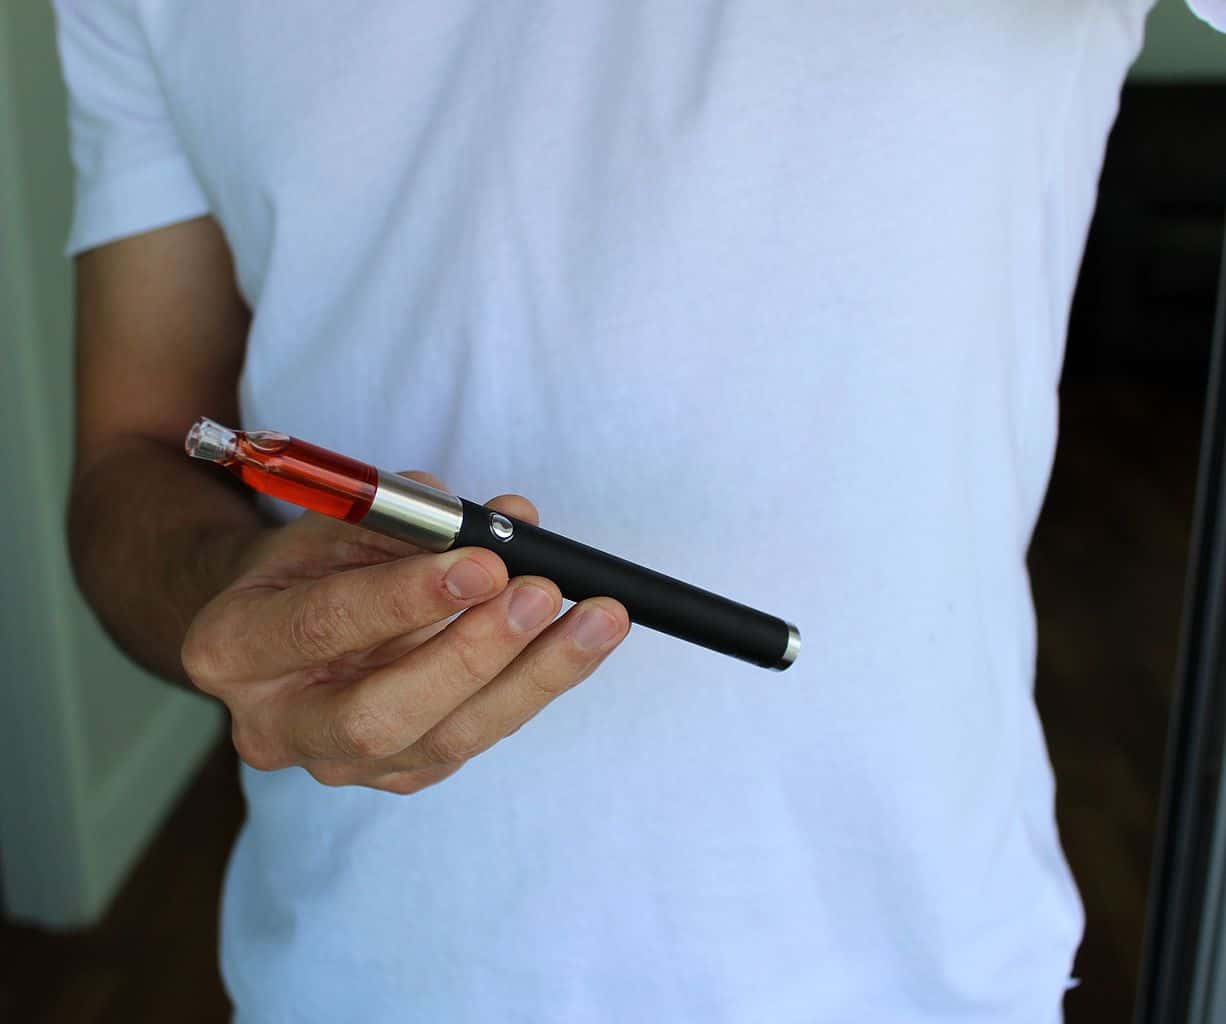 Man holding THC wax vaporizer pen